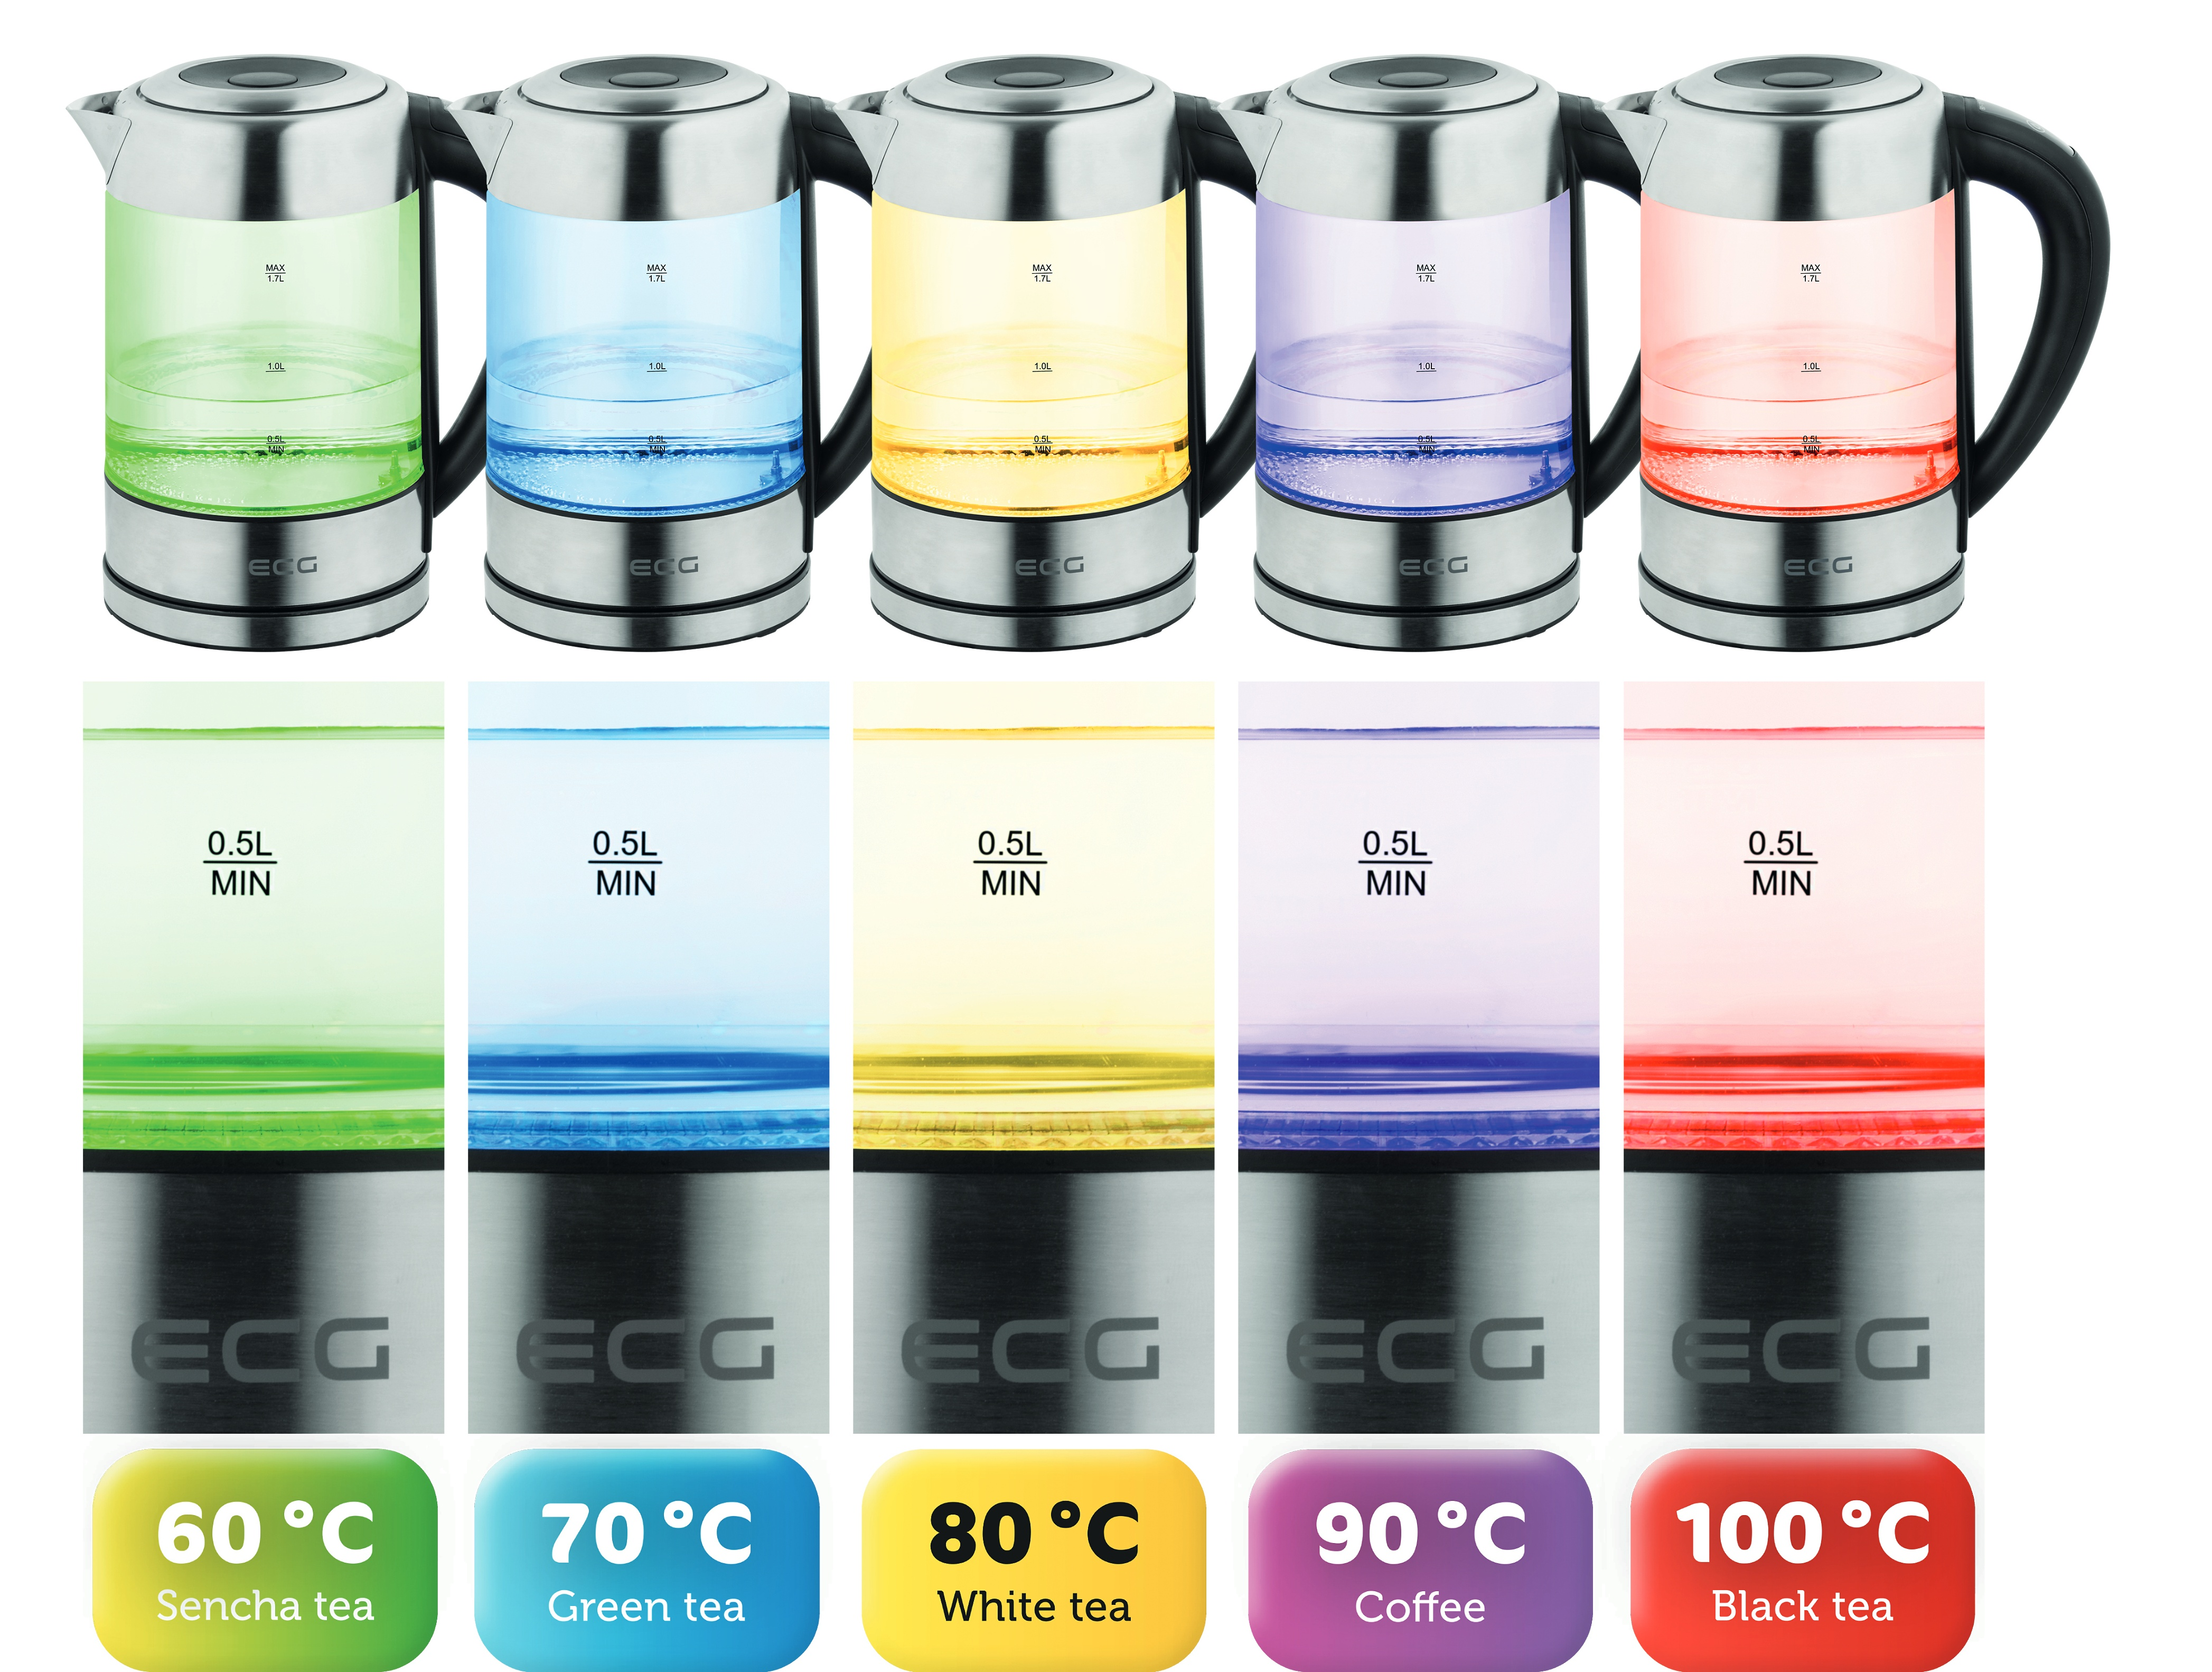 ECG RK 1777 Colore | - | Rostfreier | 1,7 l | 60 Wasserkocher, Warmhaltefunktion Temperatureinstellung 100°C Wasserkocher Stahl 